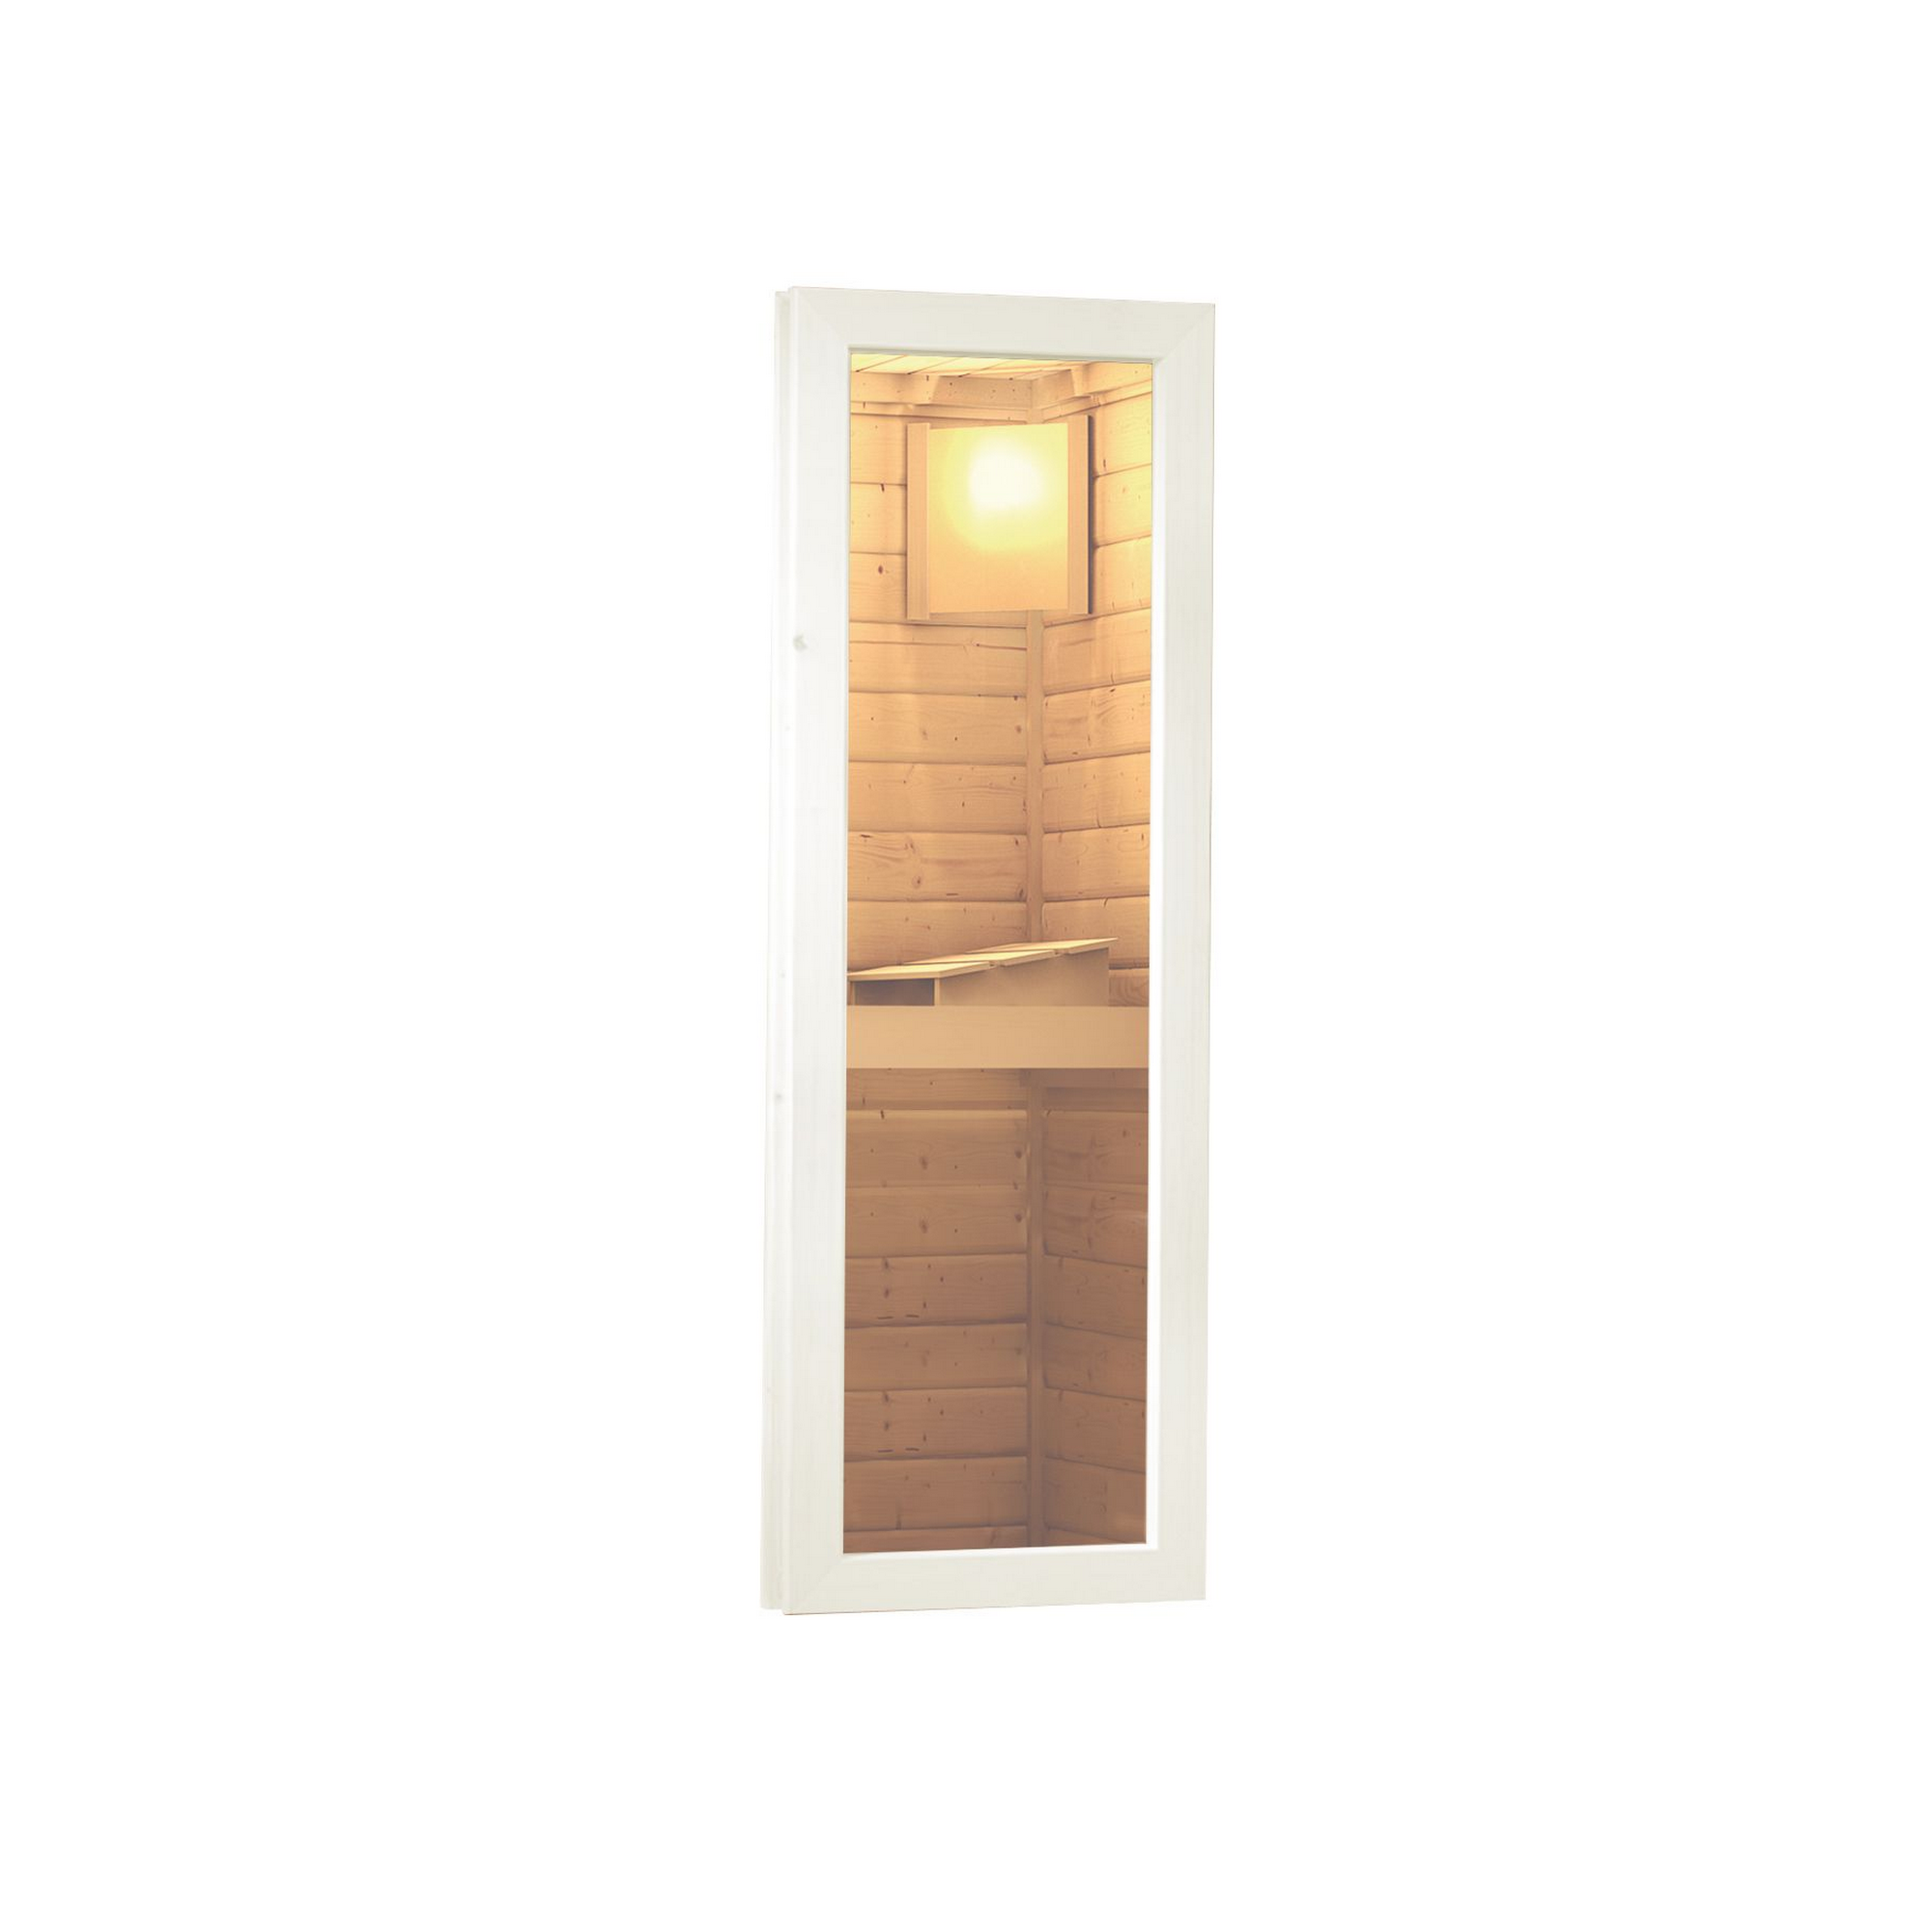 Saunahaus 'Skrollan 3' terragrau mit moderner Tür und Holzofen 396 x 231 x 227 cm + product picture